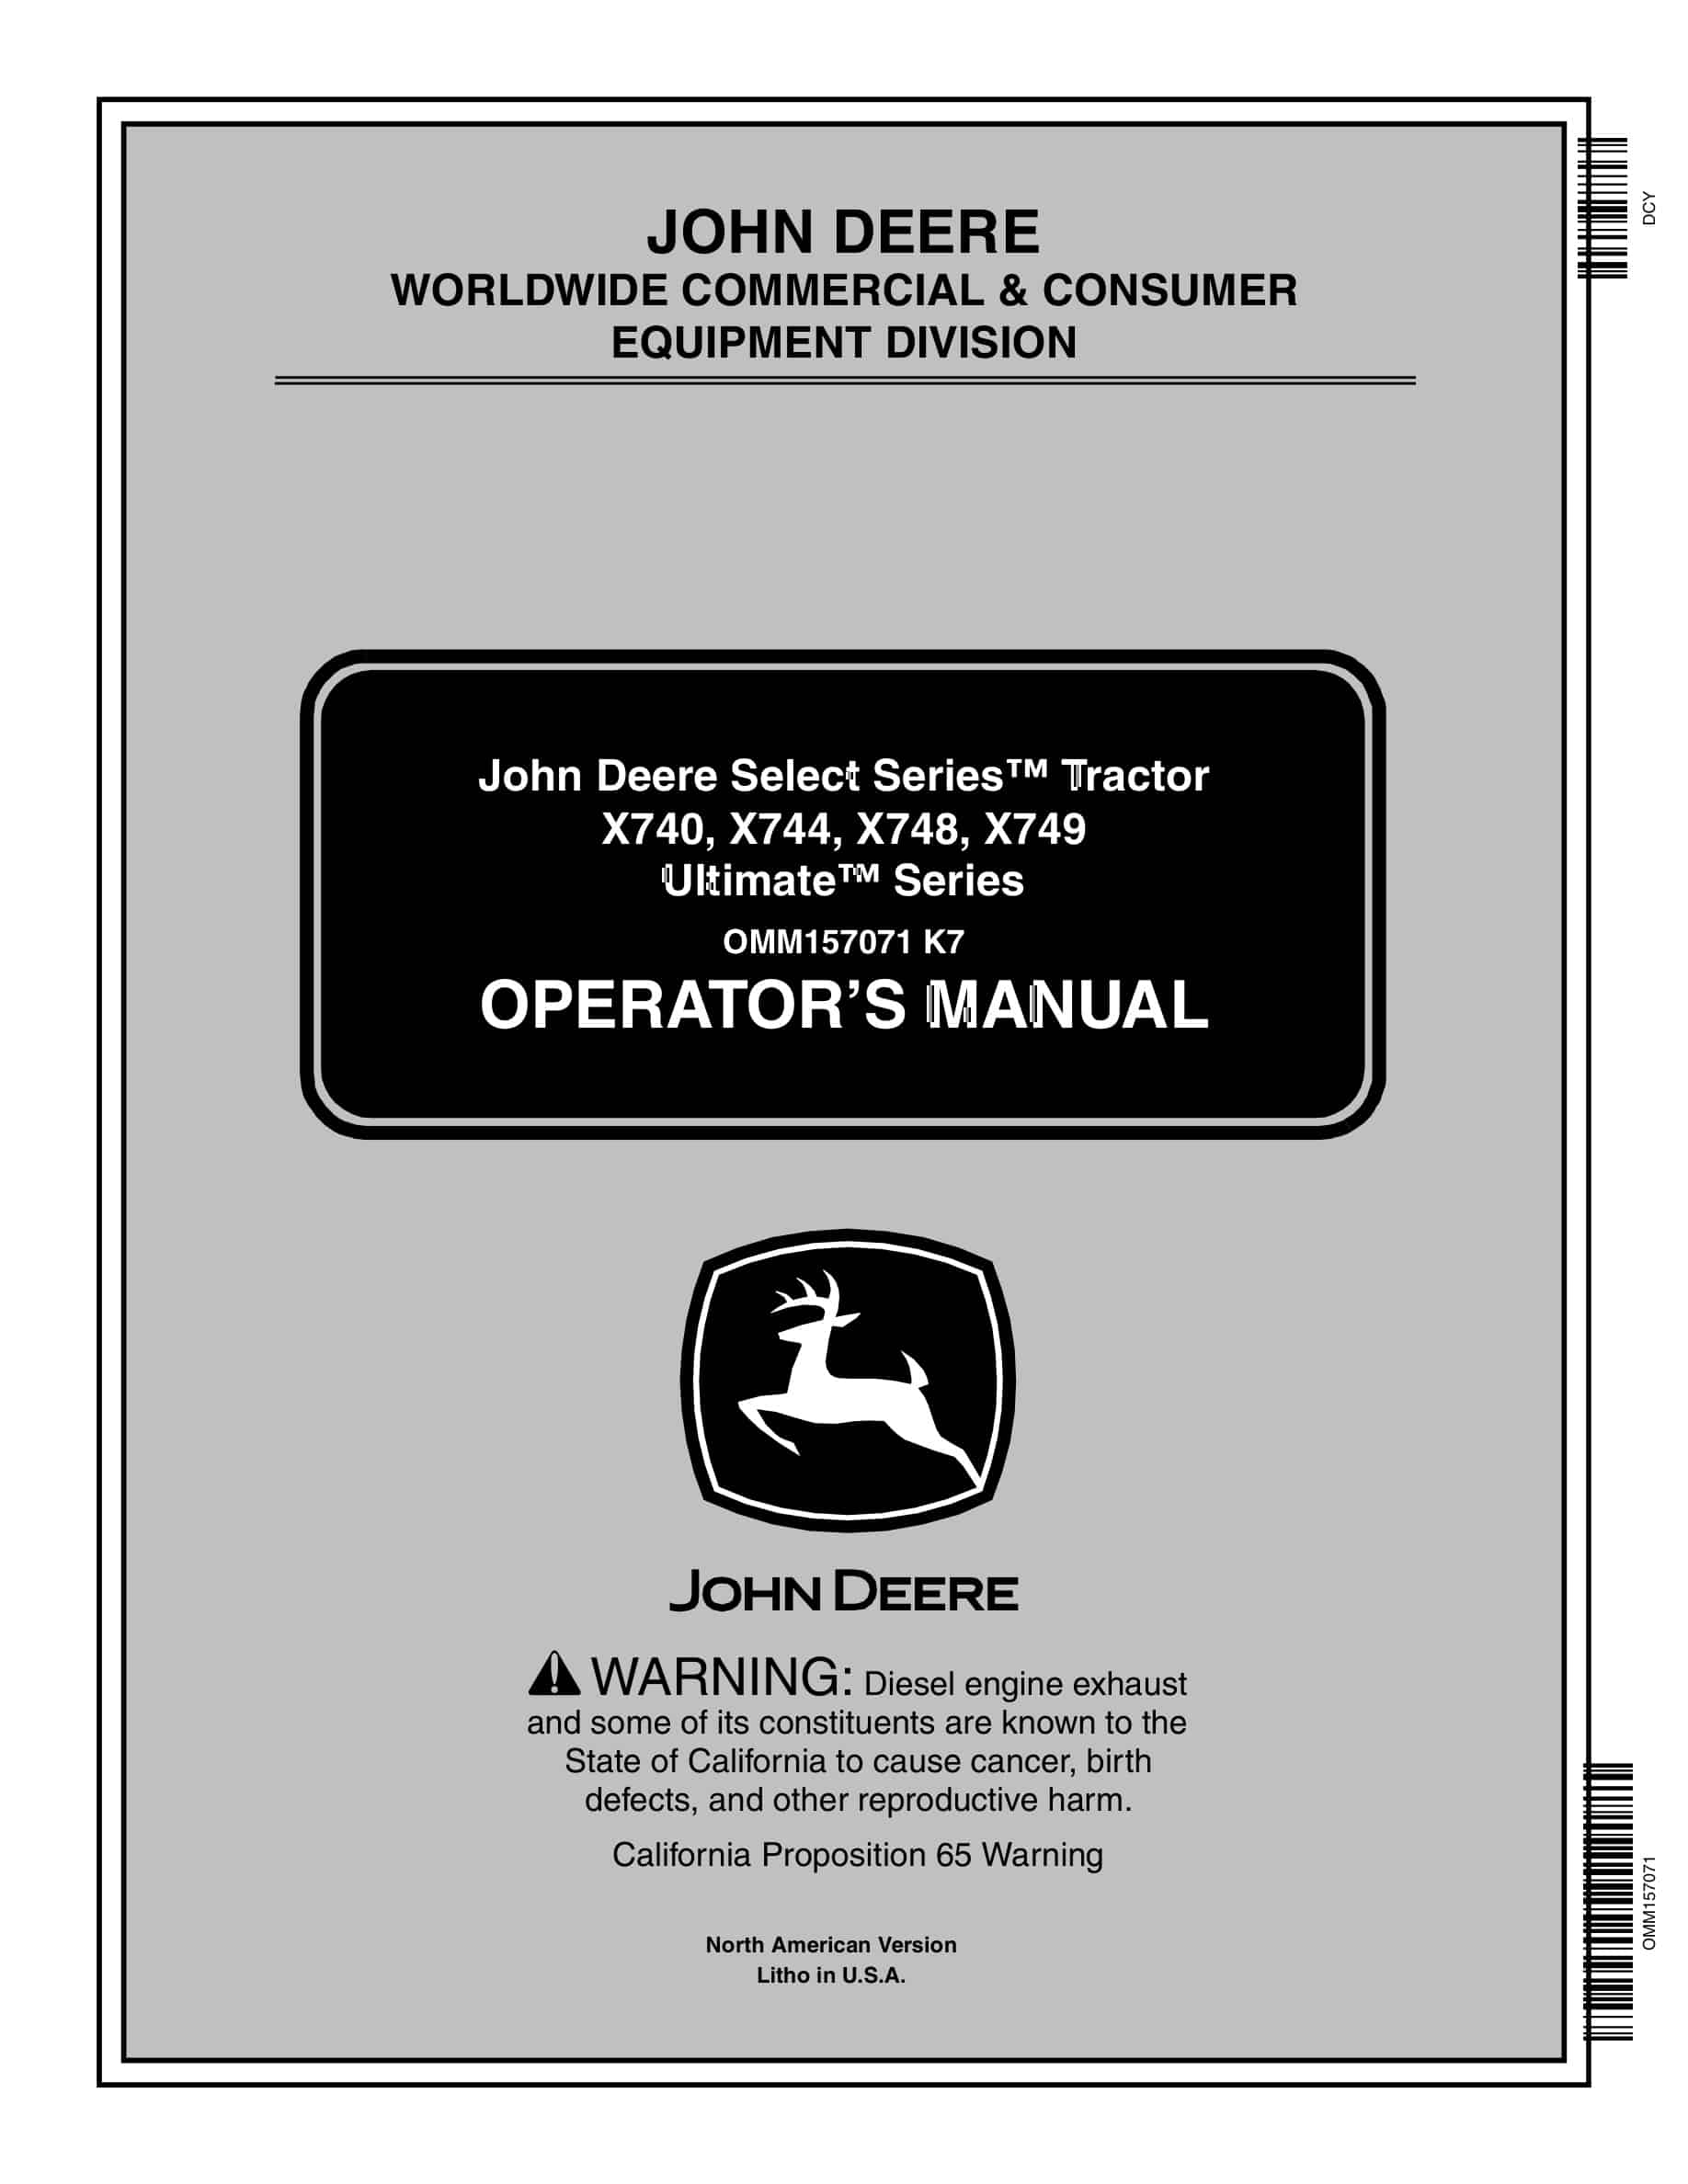 John Deere X740, X744, X748, X749 Tractor Operator Manual OMM157071-1